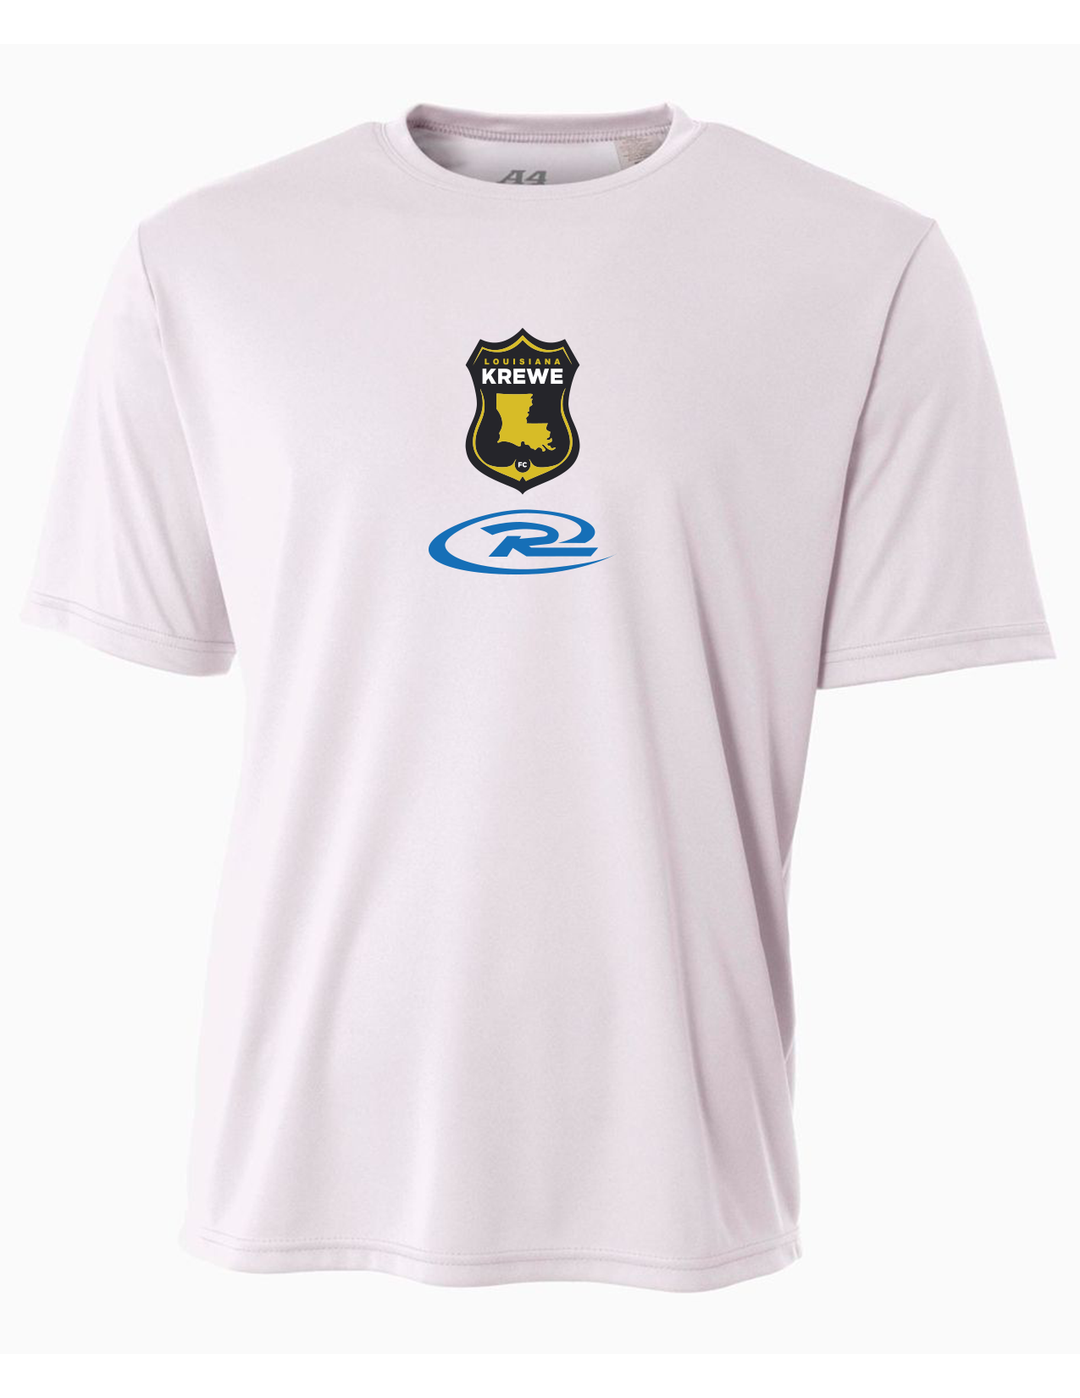 A4 La Krewe-Rush Short-Sleeve Shirt FC - Black, Silver Or White LA KREWE RUSH White Mens Small - Third Coast Soccer